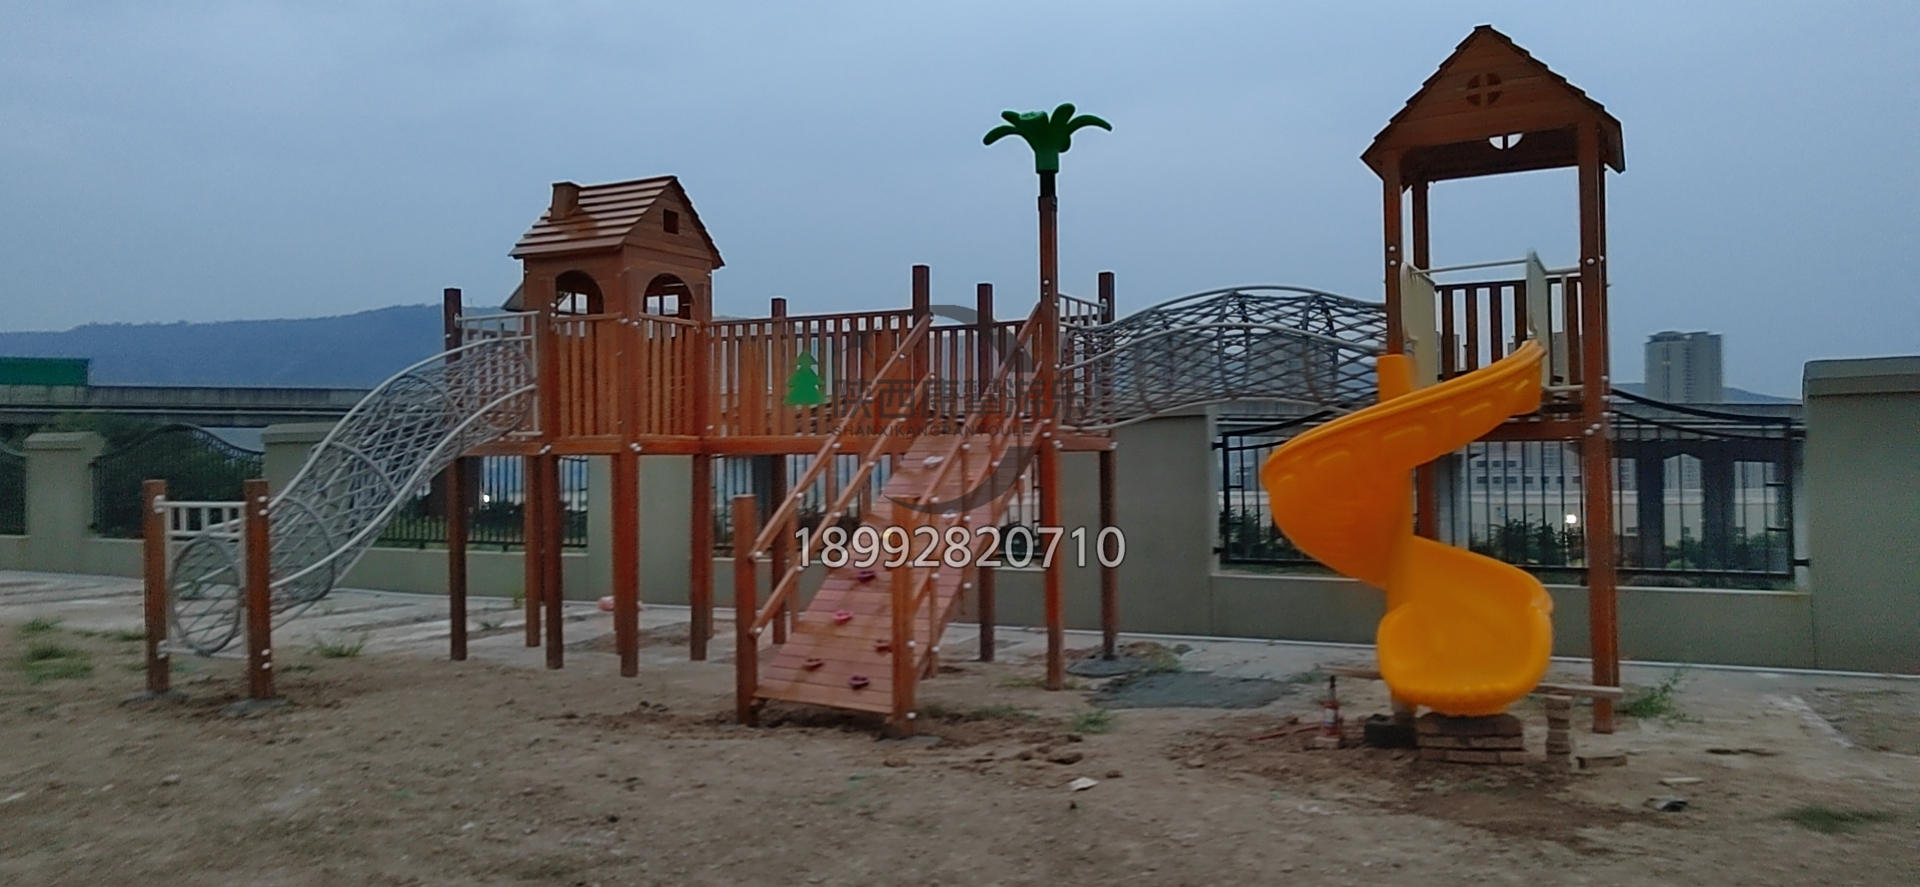 西安灞桥第二幼儿园木质滑梯案例